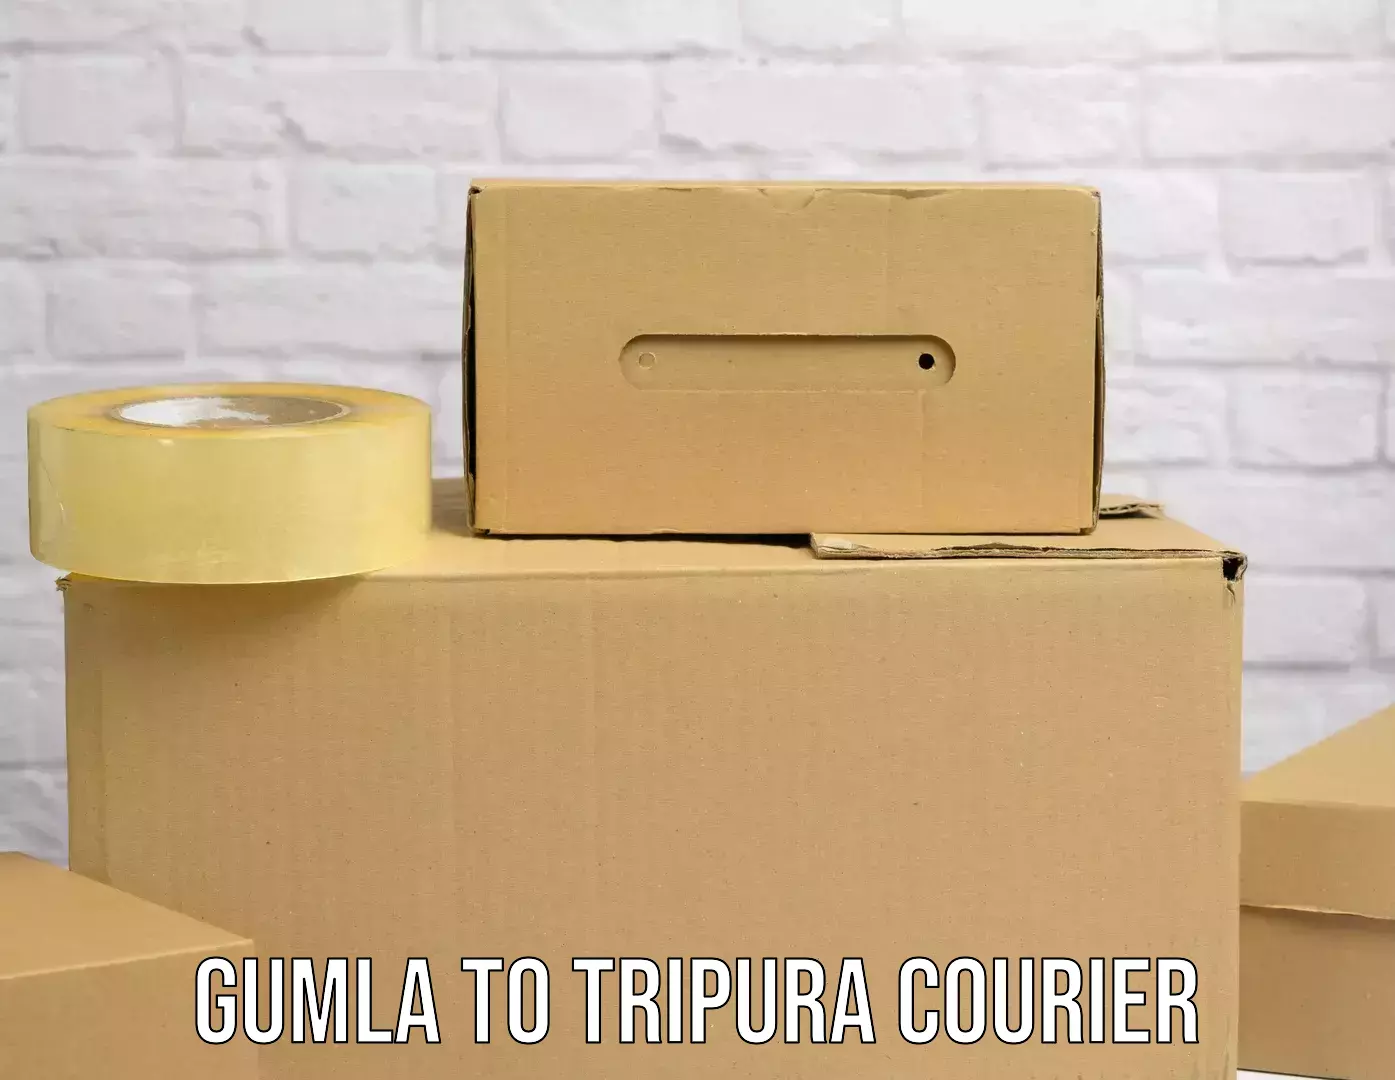 Customer-oriented courier services Gumla to Dharmanagar